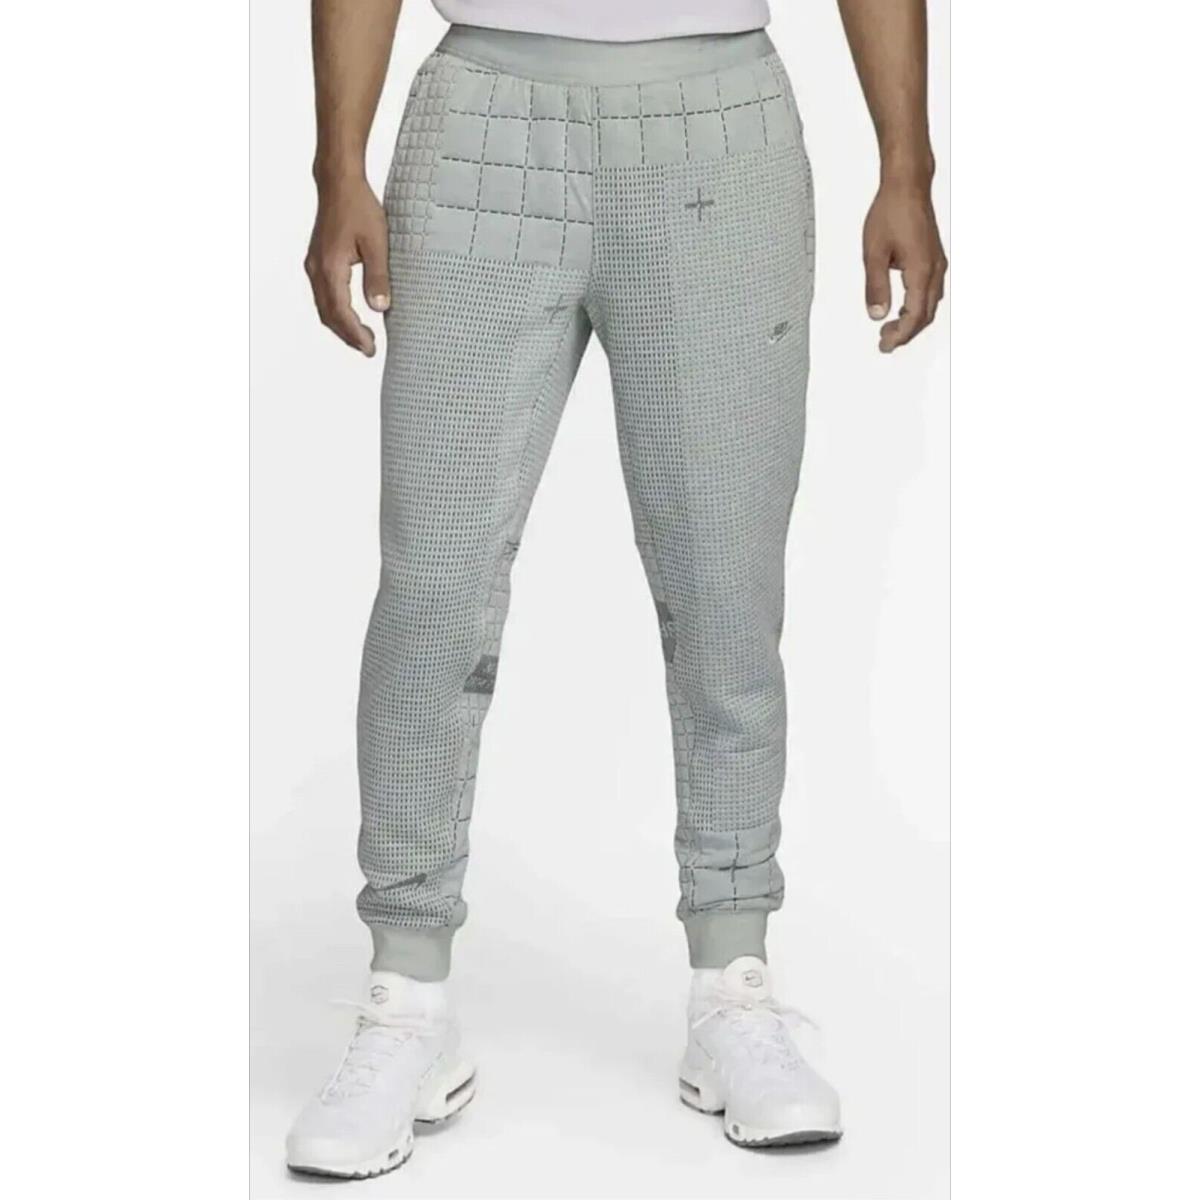 Nike Sportswear Therma Fit Adv Tech Pack Jogger Pants Gray L XL DM5550-034